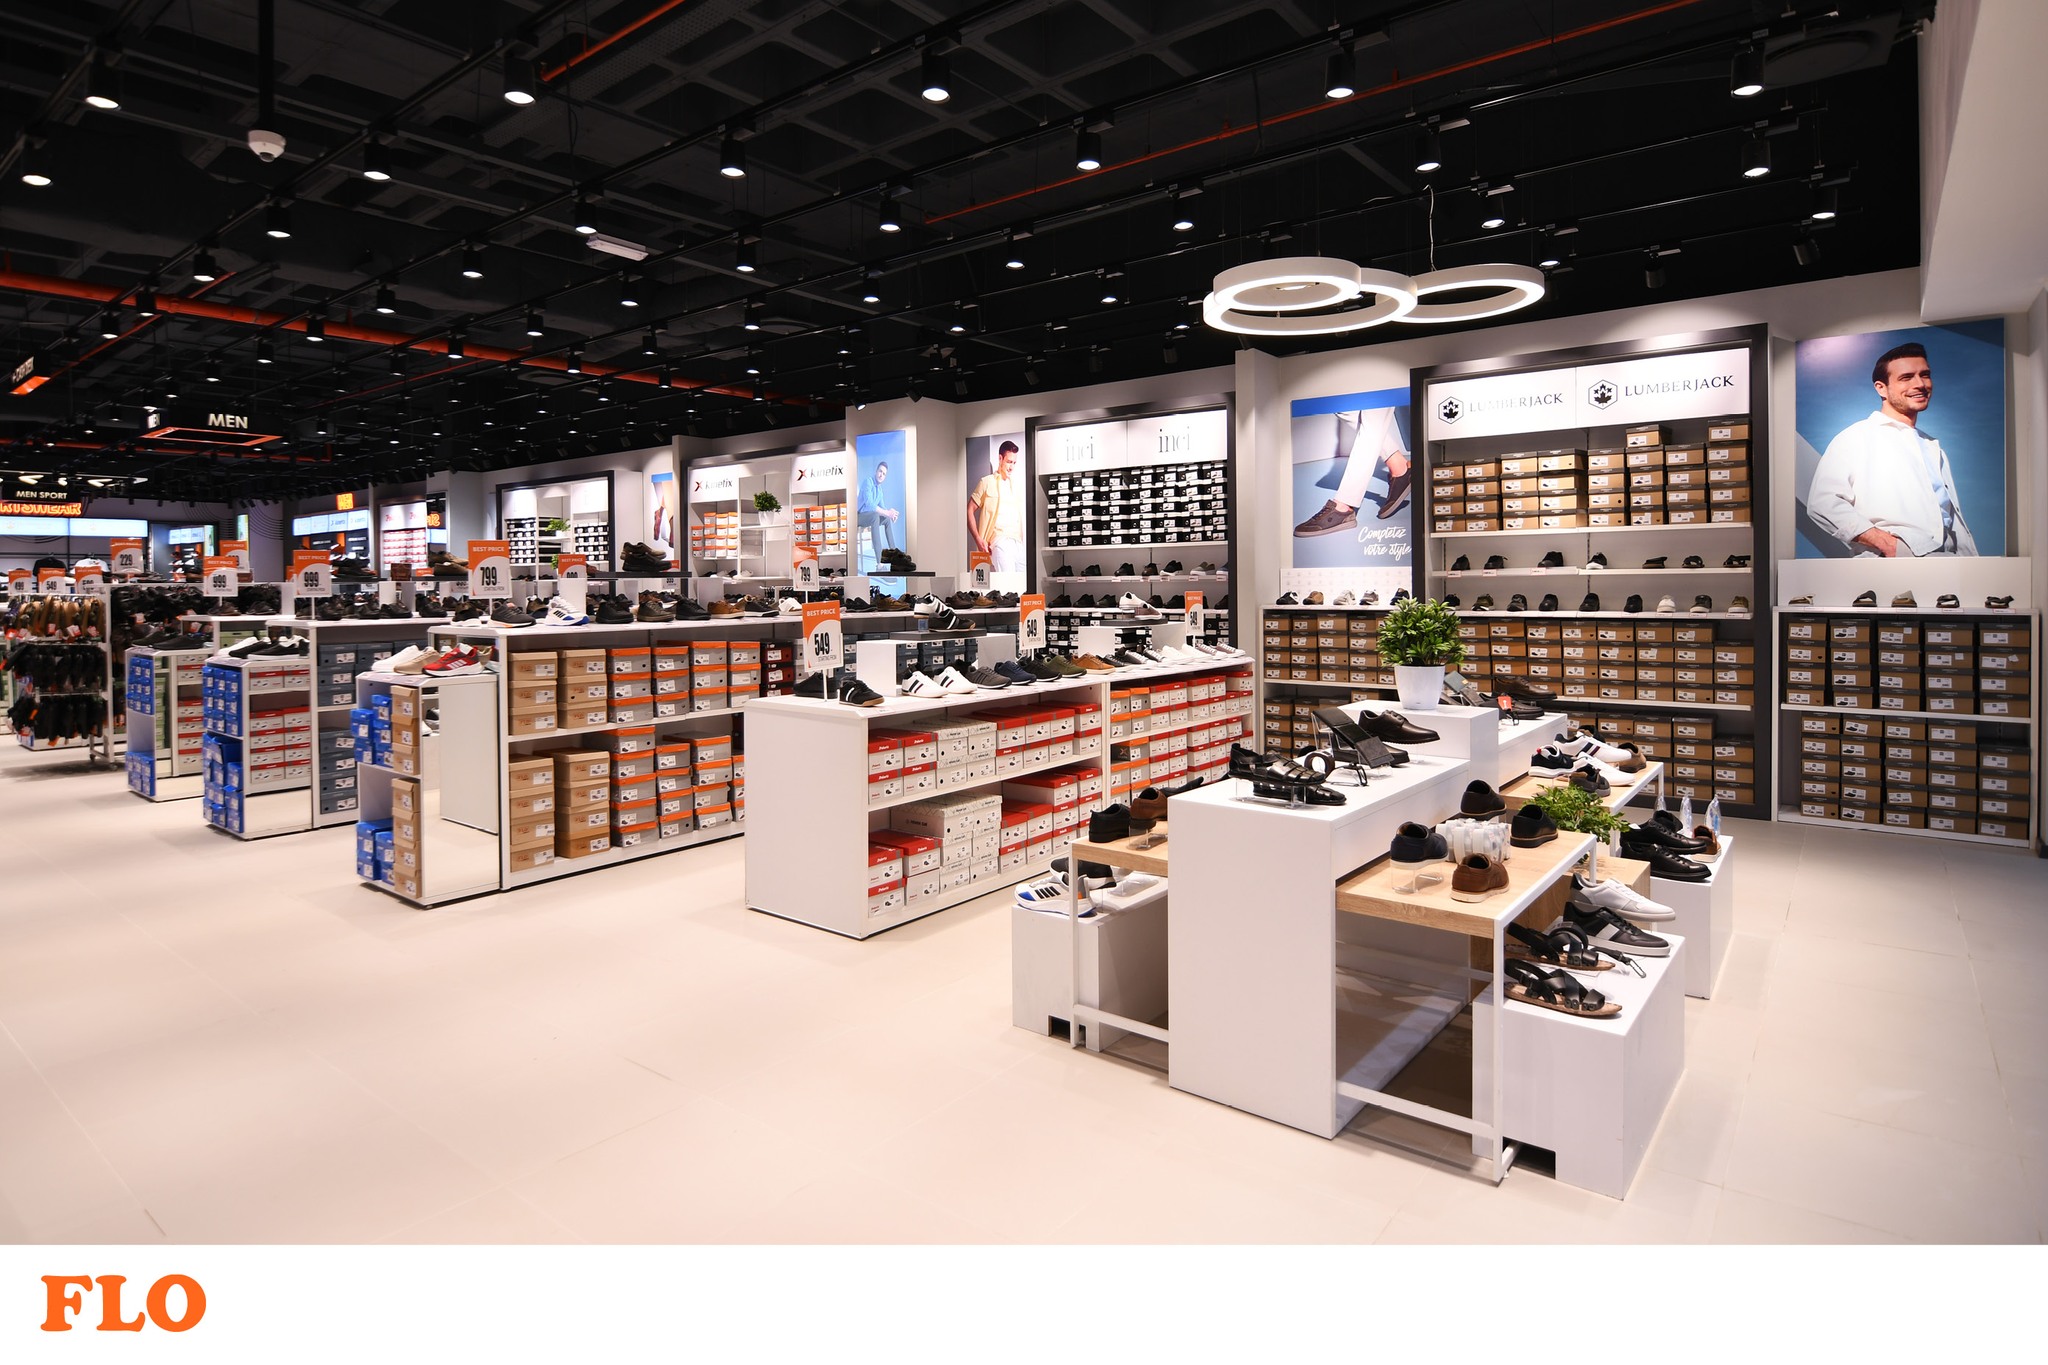 FLO shoe store opened in Berkarar shopping center in Ashgabat | Business